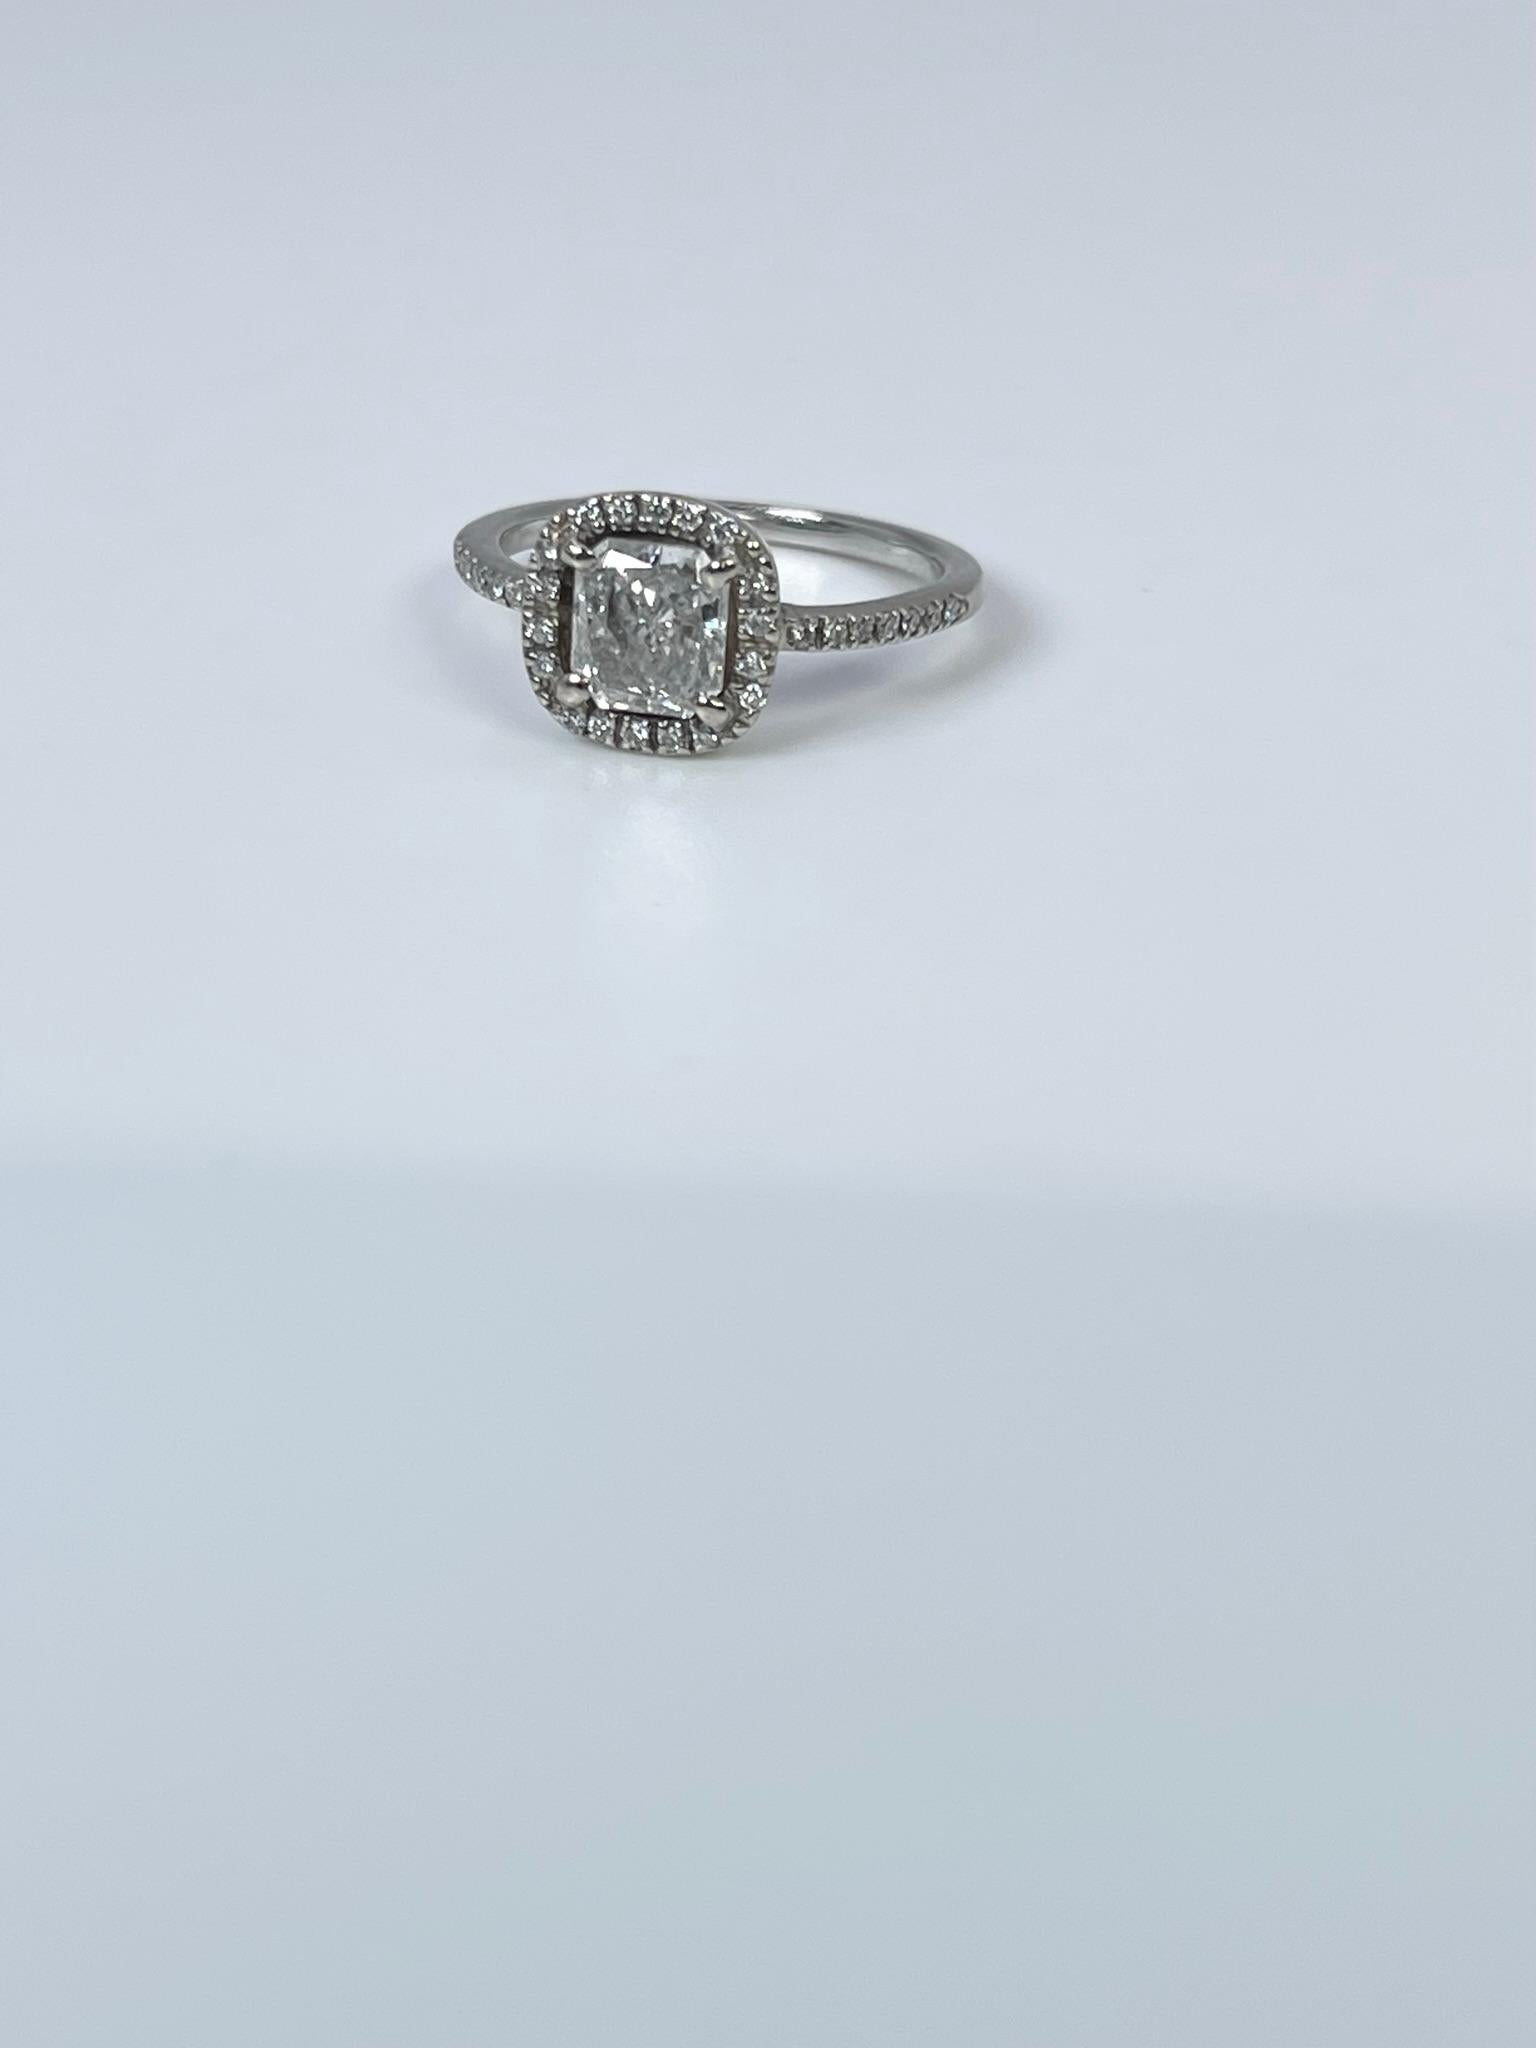 Salz- und Pfefferdiamant mit einem Gewicht von 1,01 Karat, umgeben von einem Halo aus Diamanten mit einem Gewicht von 0,16 Karat. Salz und Pfeffer Diamanten sind einzigartig, erhalten Sie diesen Ring auf Fotos bitte schauen Sie sich alle